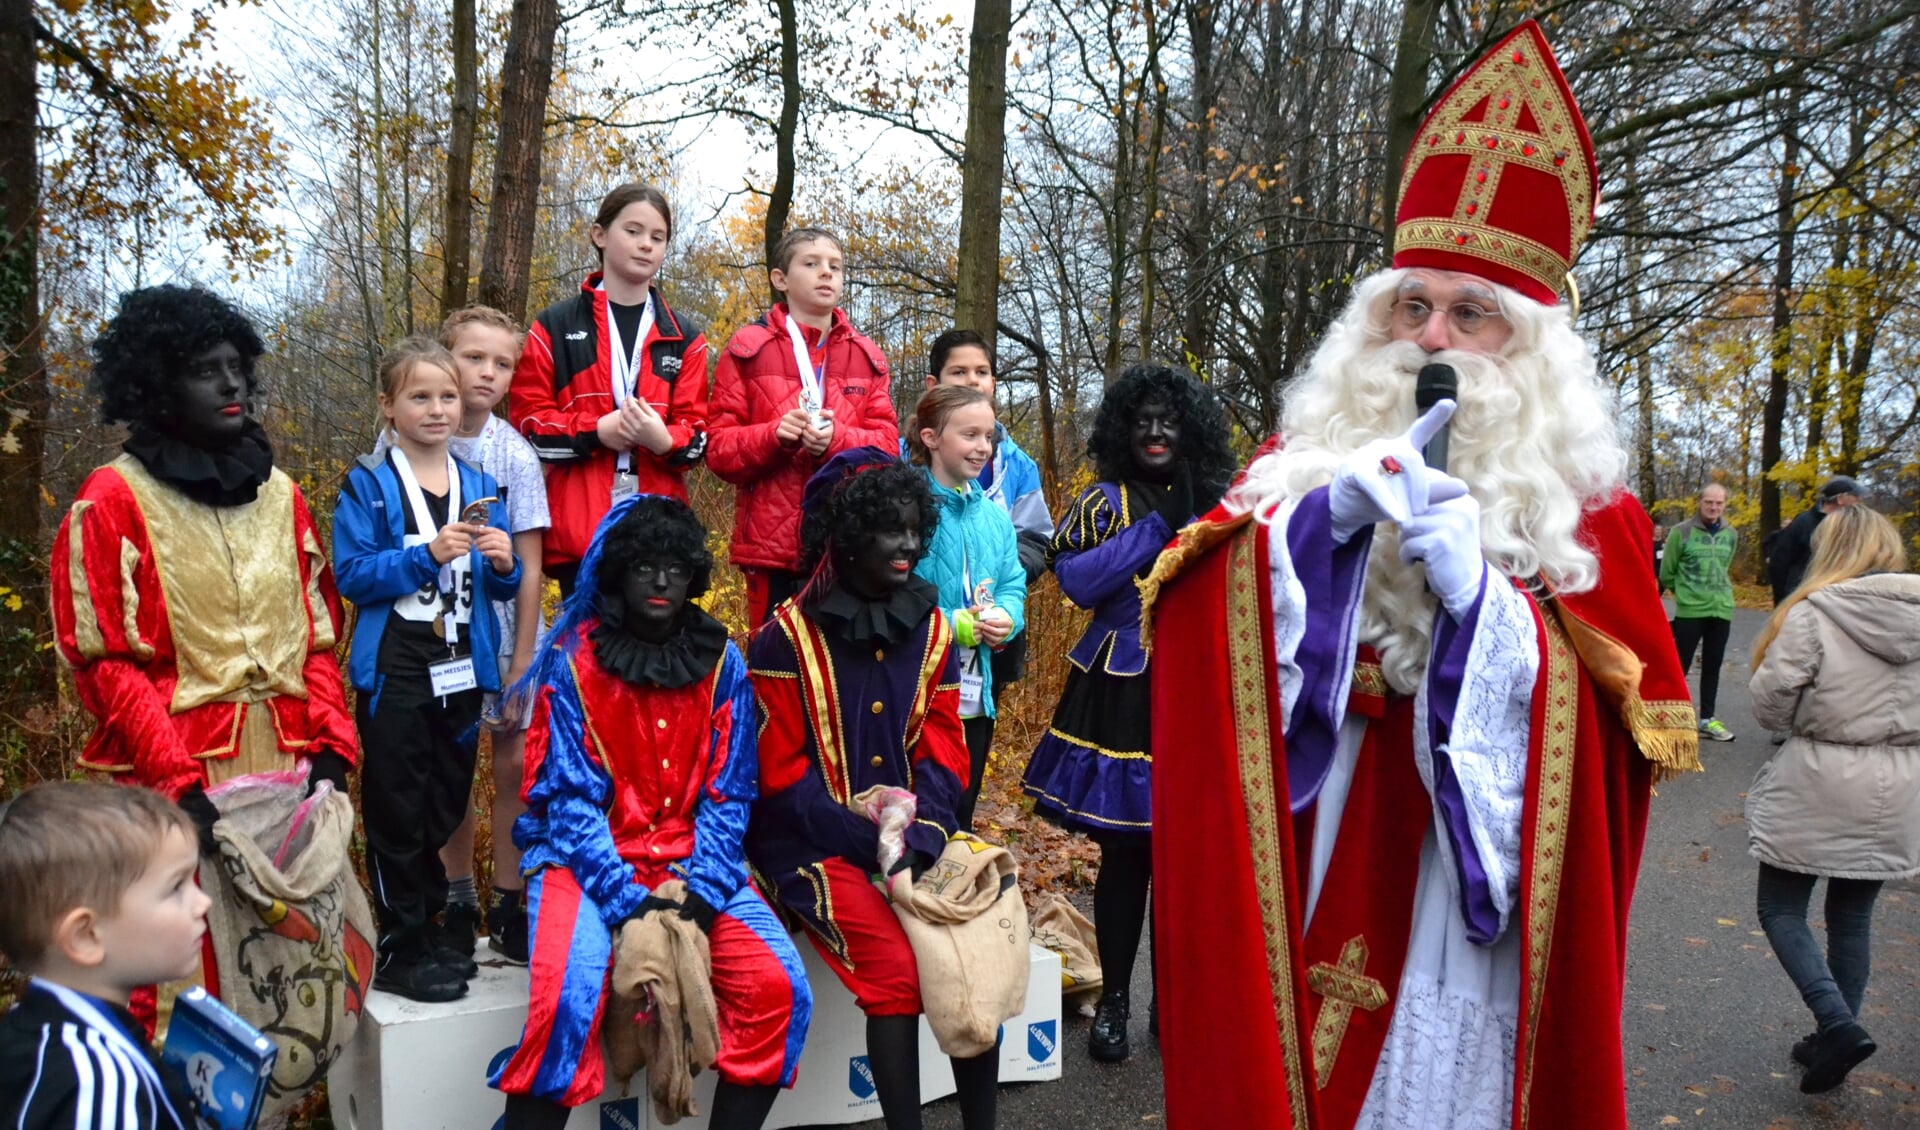 Huldiging van de kinderen bij de surpriseloop door niemand minder dan Sinterklaas.